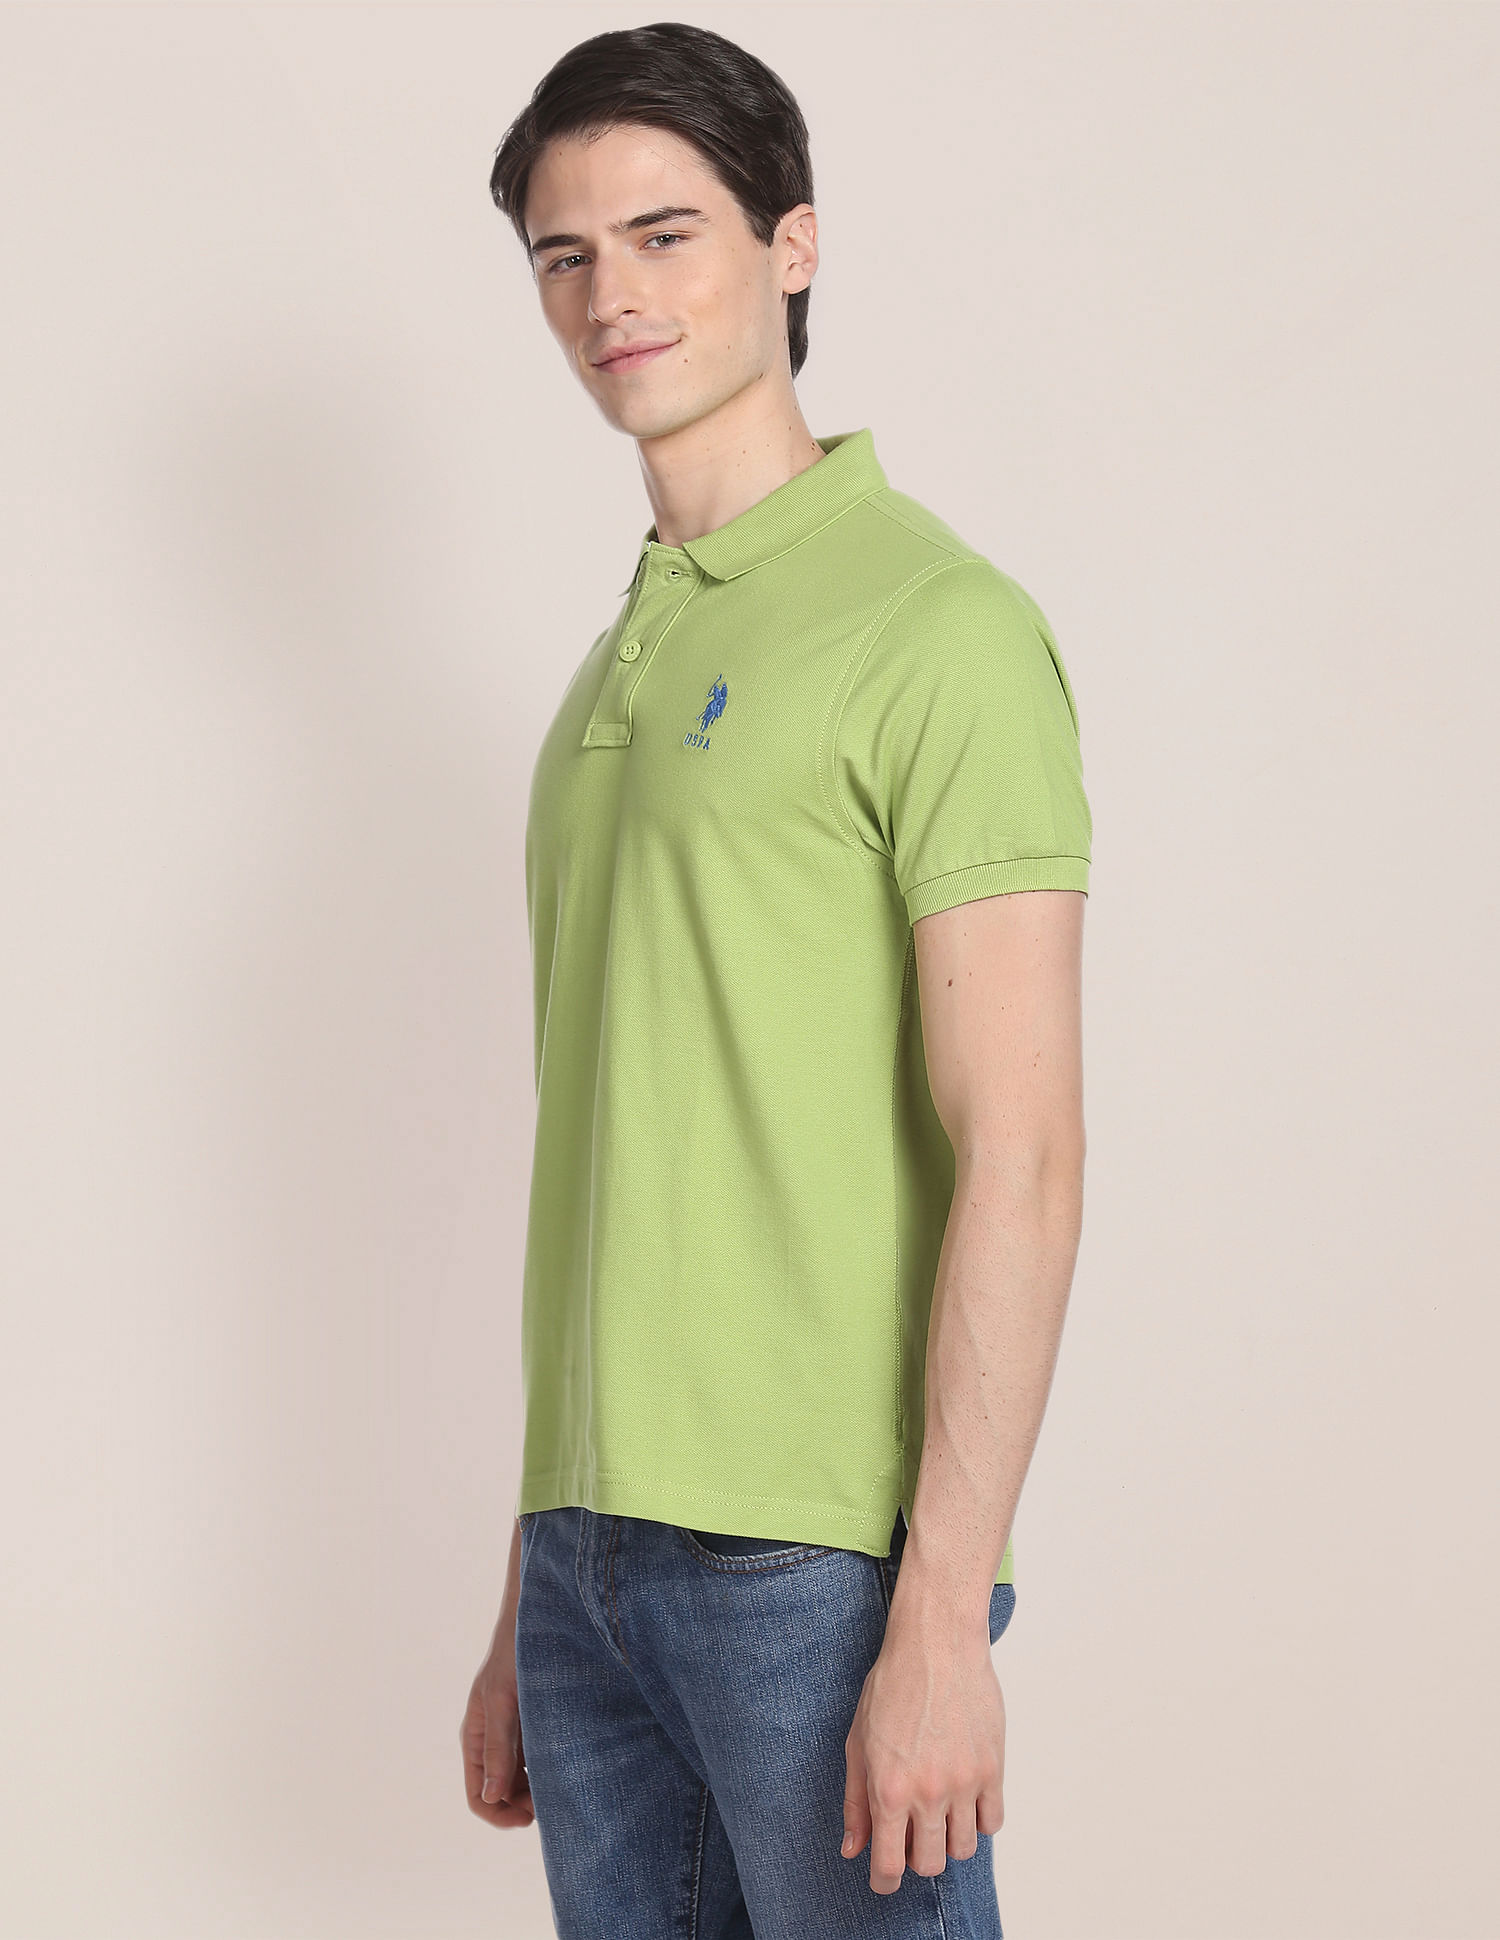 U.S. Polo Assn. Mandarin Collar Luxury Polo Shirt, Green (XL)